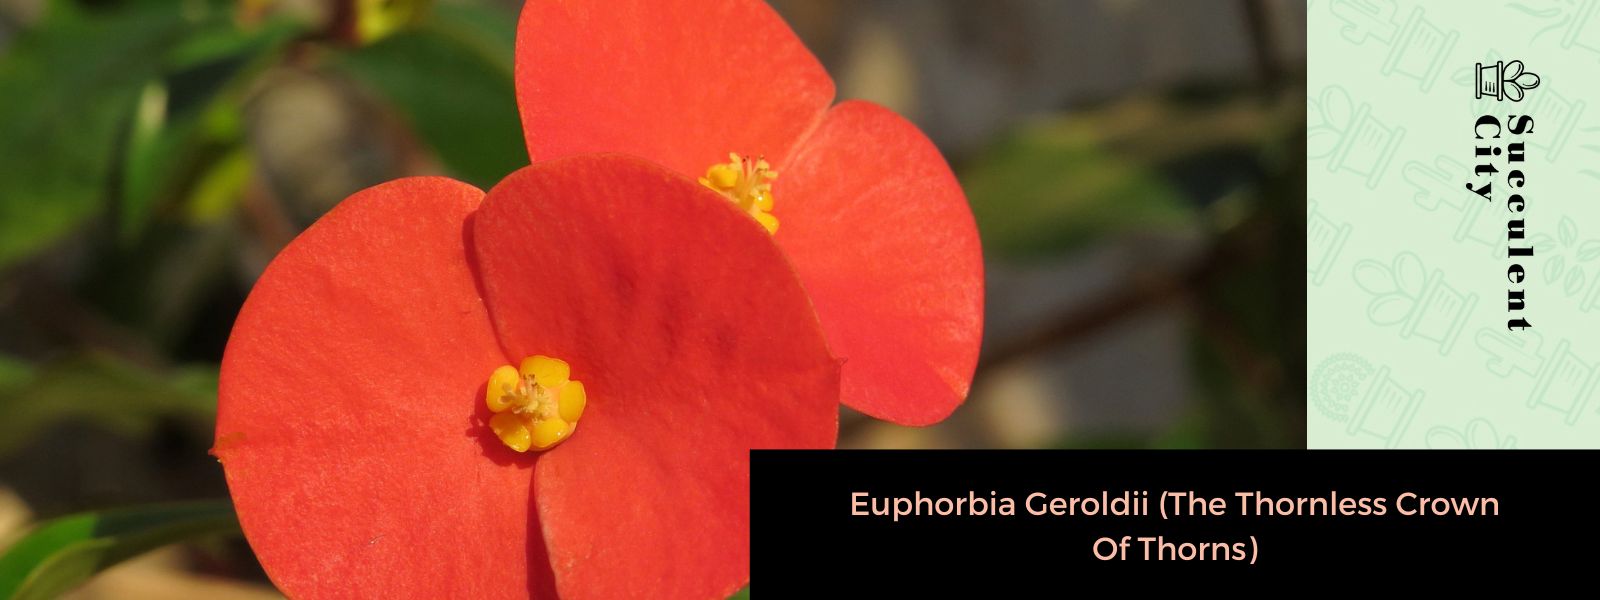 Euphorbia Geroldii (Corona de espinas sin espinas)